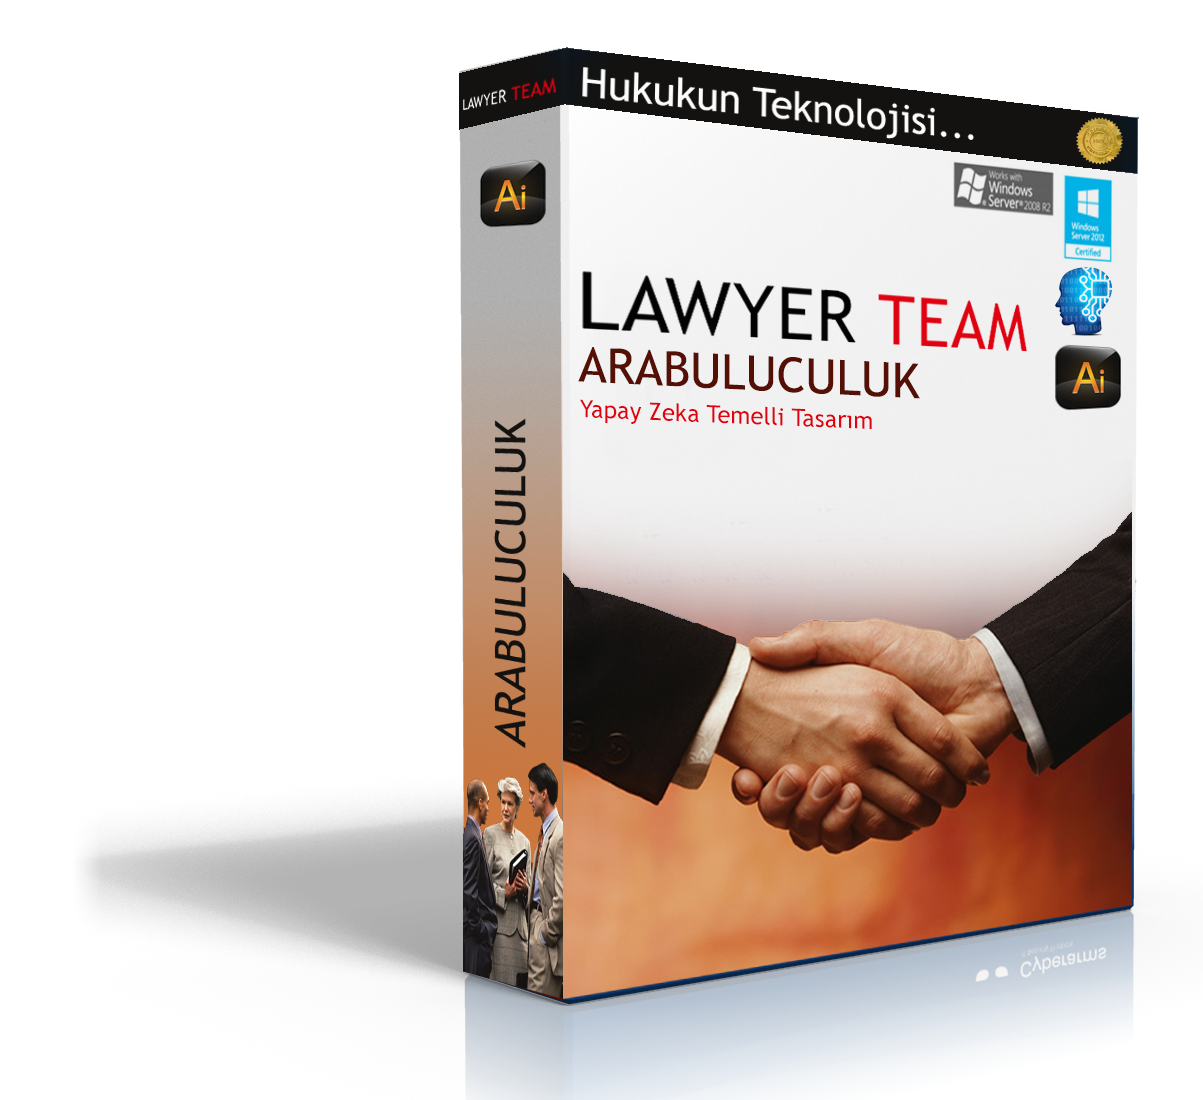 Lawyer Team Arabuluculuk Yönetimi